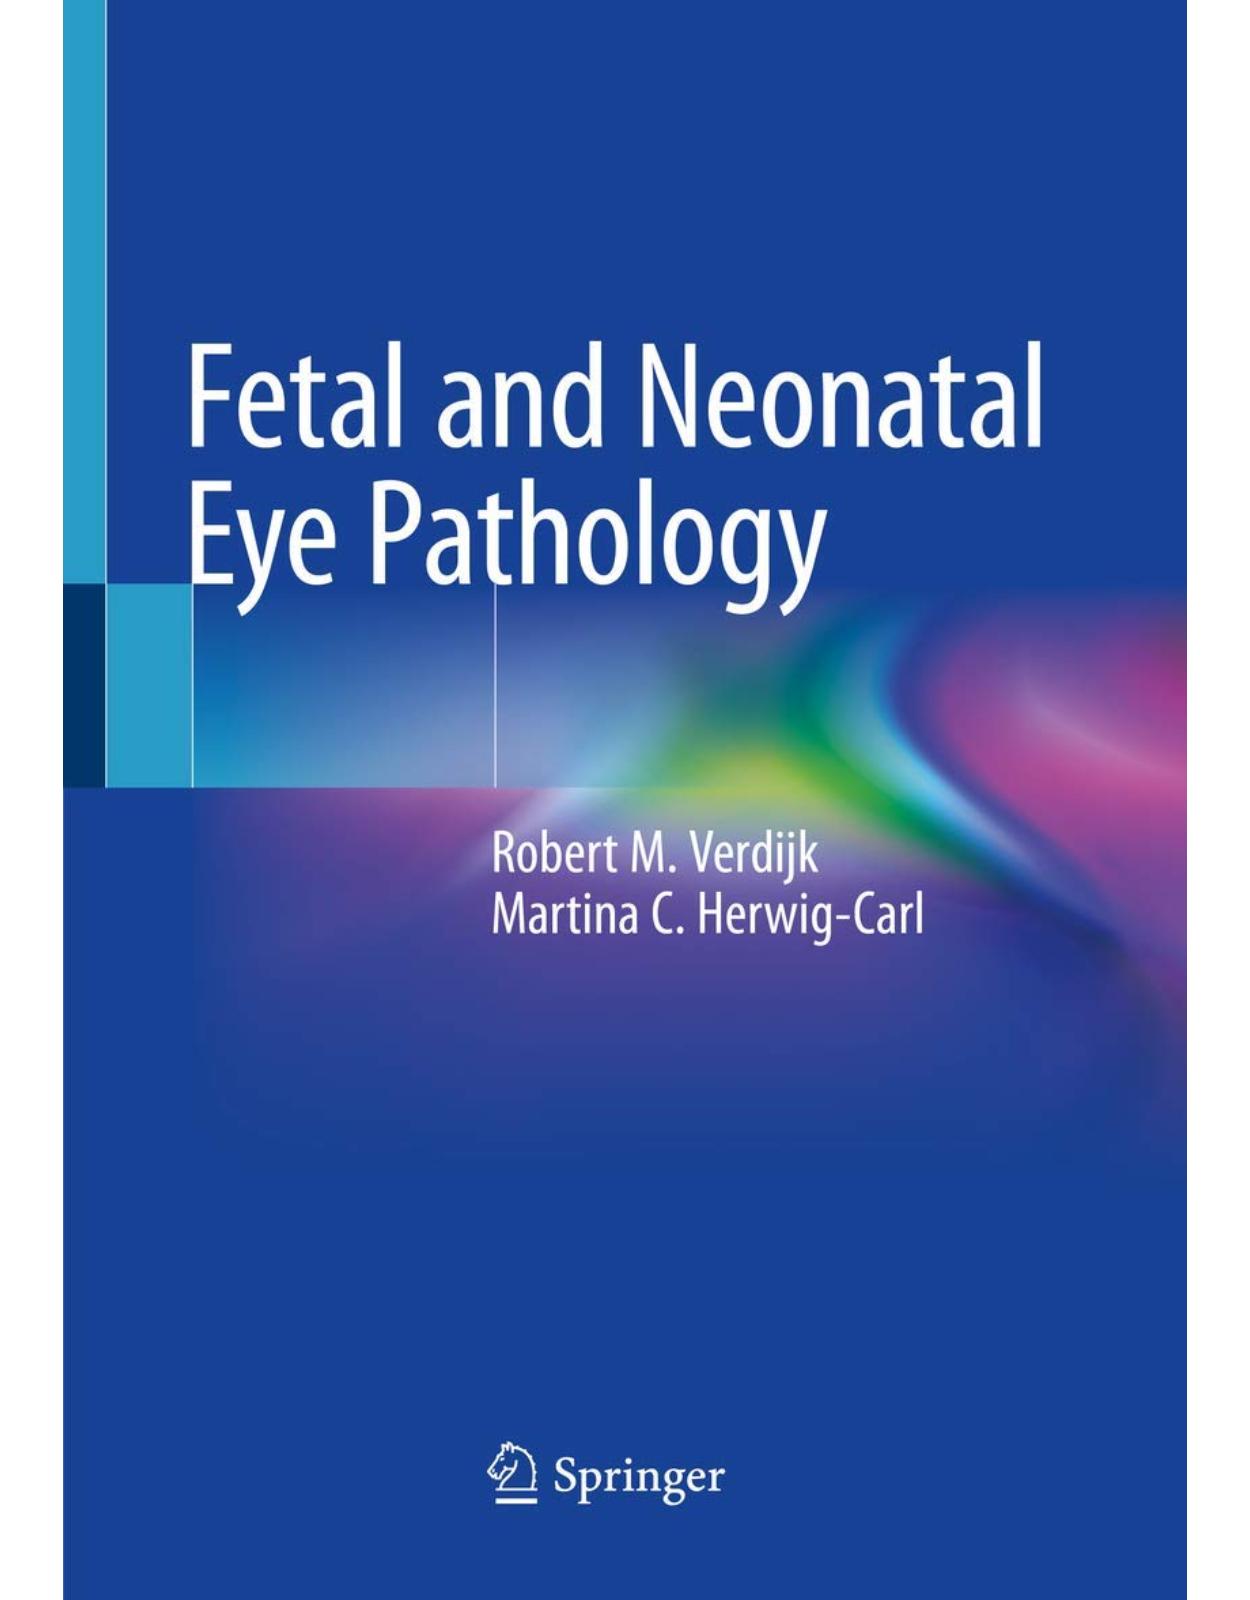 Fetal and Neonatal Eye Pathology 